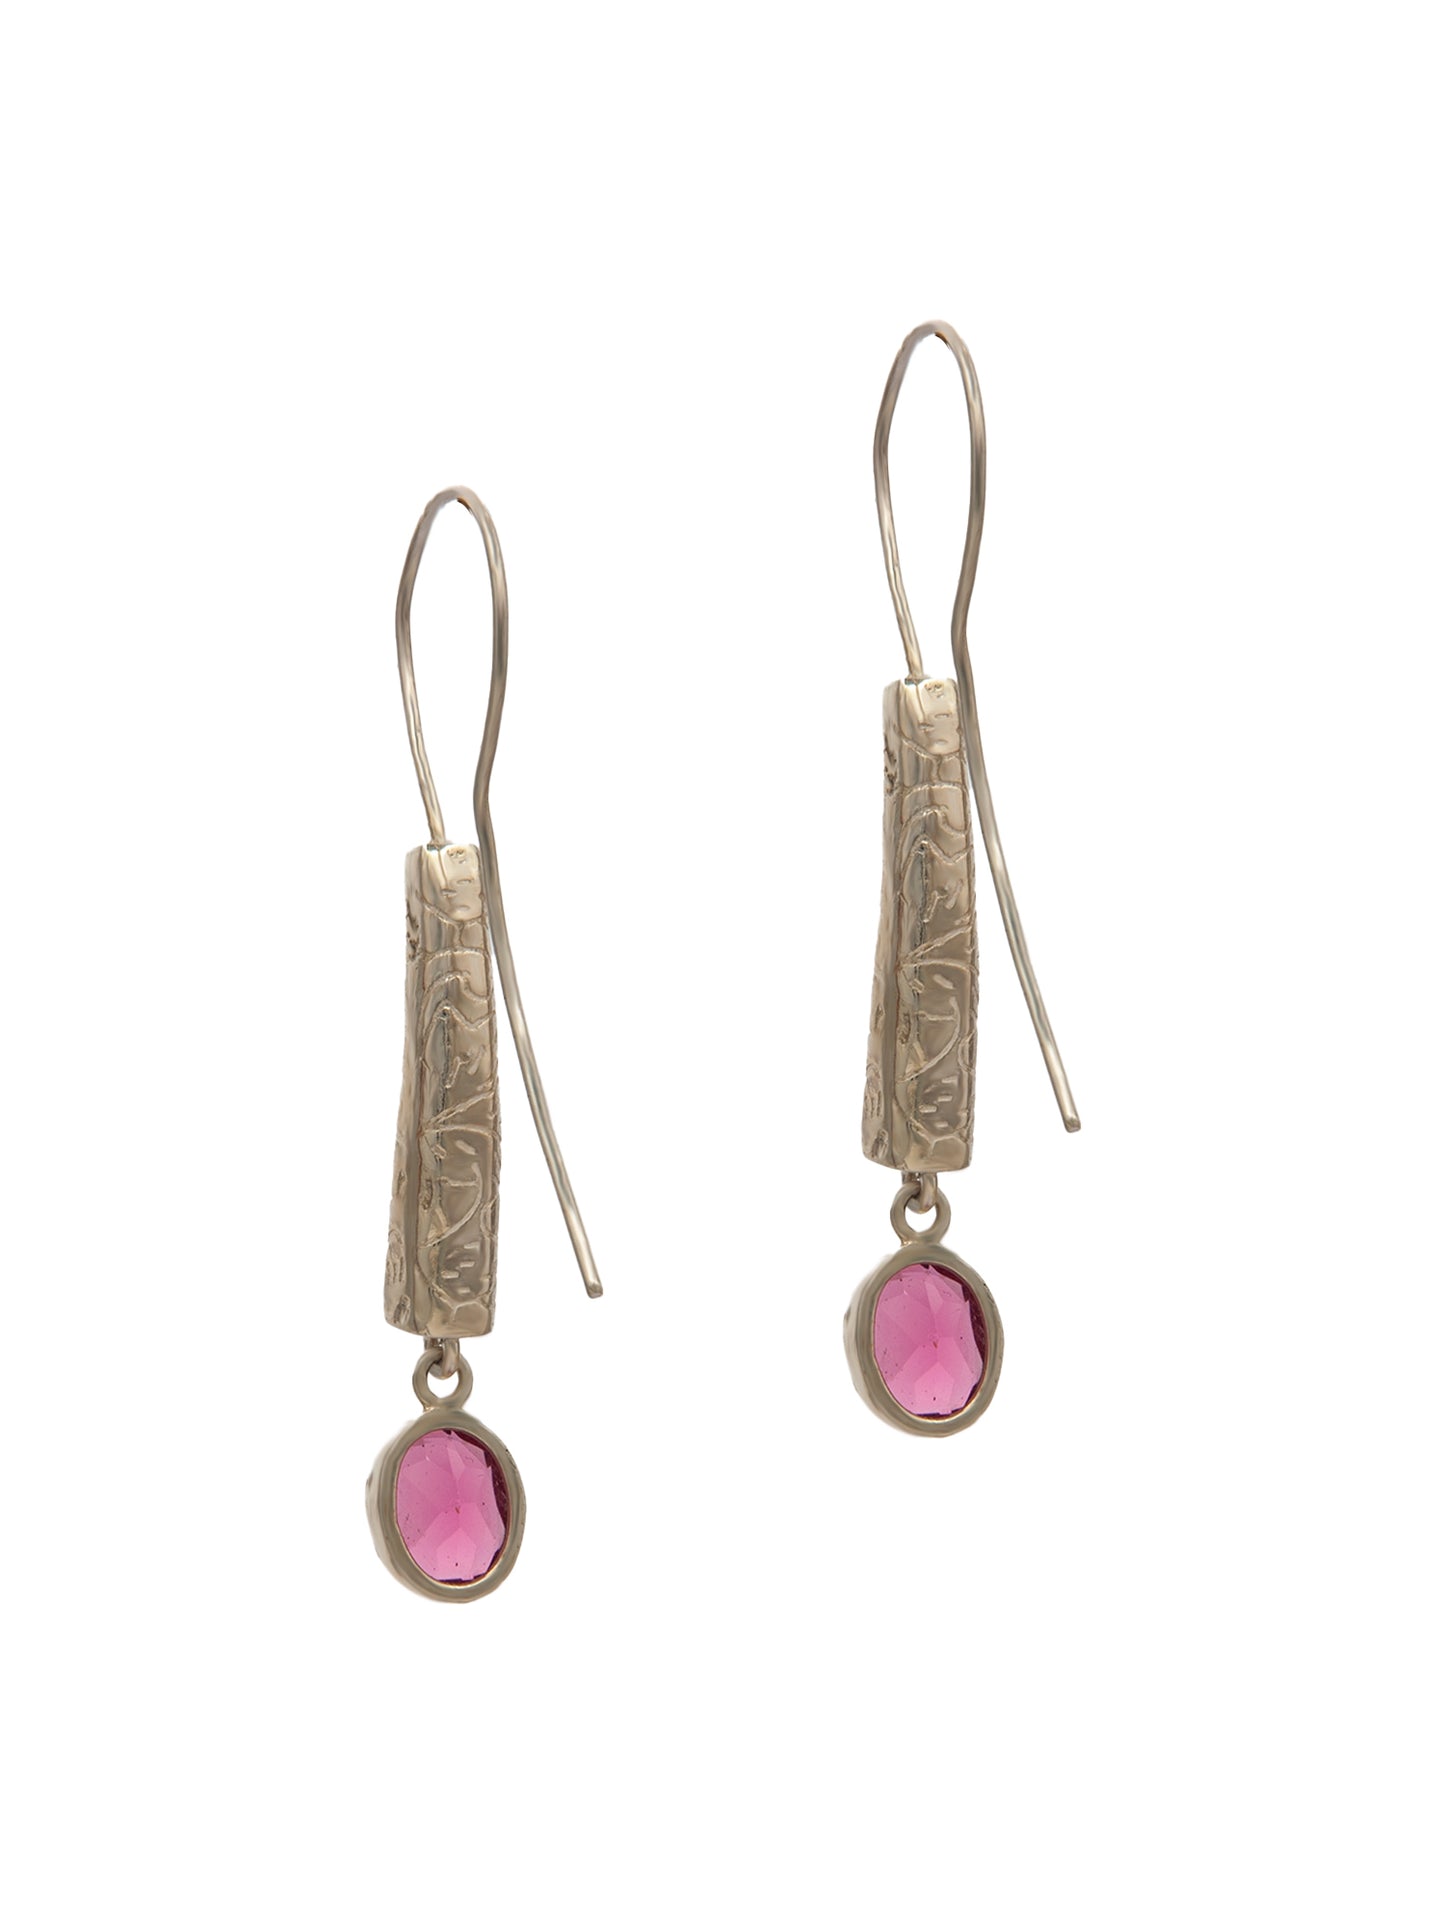 Rosy Radiance Designer Dangler Earrings: 925 Sterling Silver